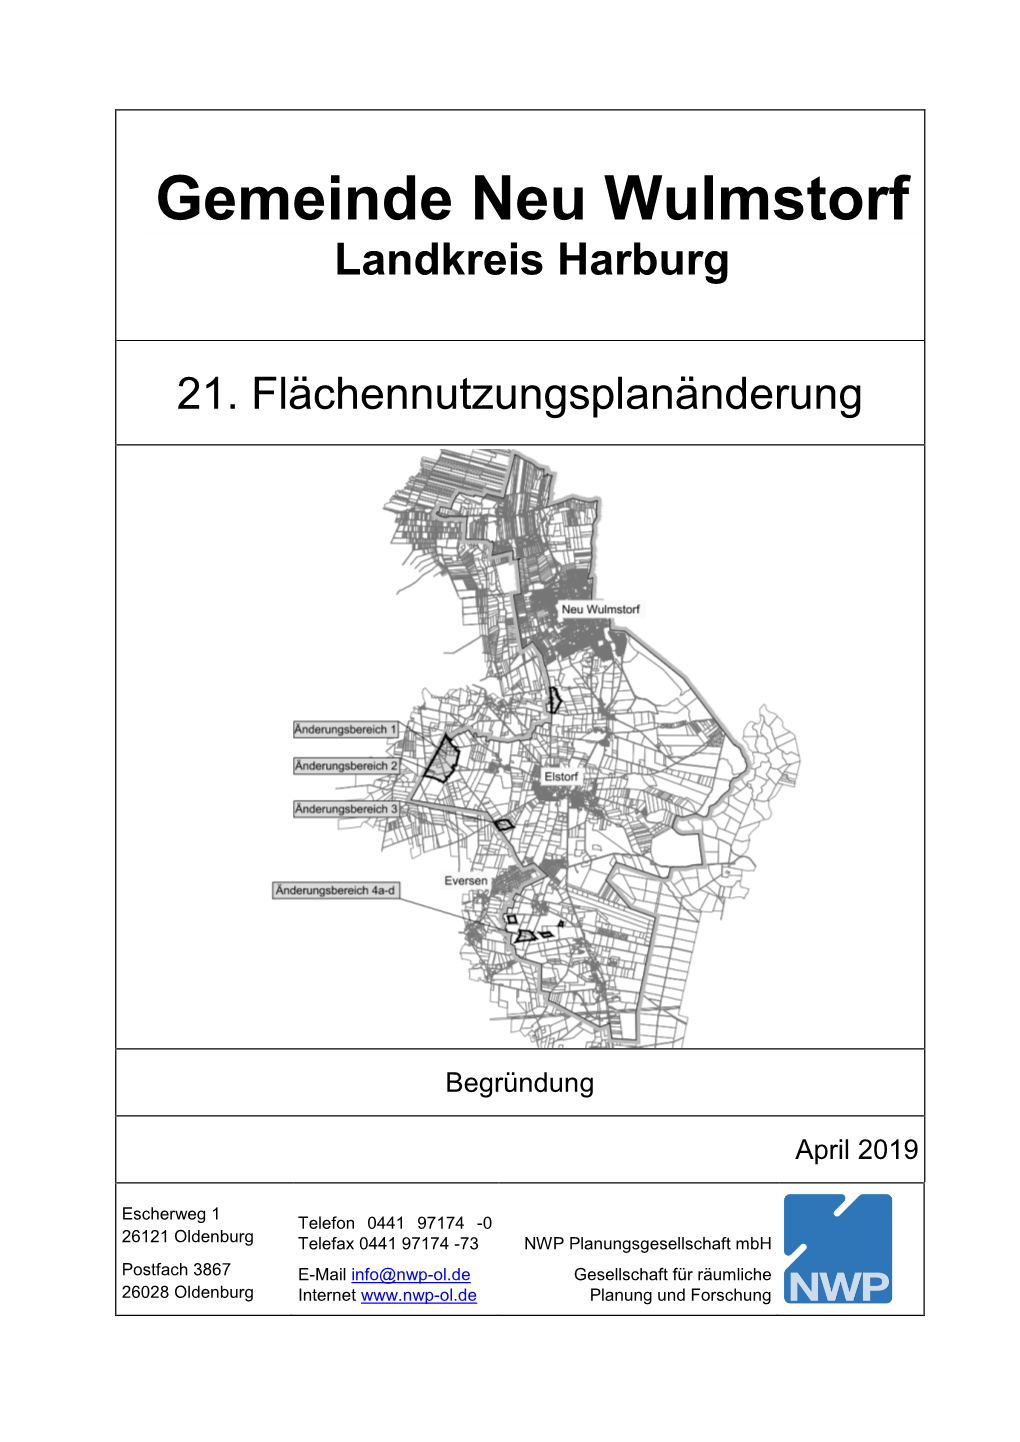 Landkreis Harburg 21. Flächennutzungsplanänderung